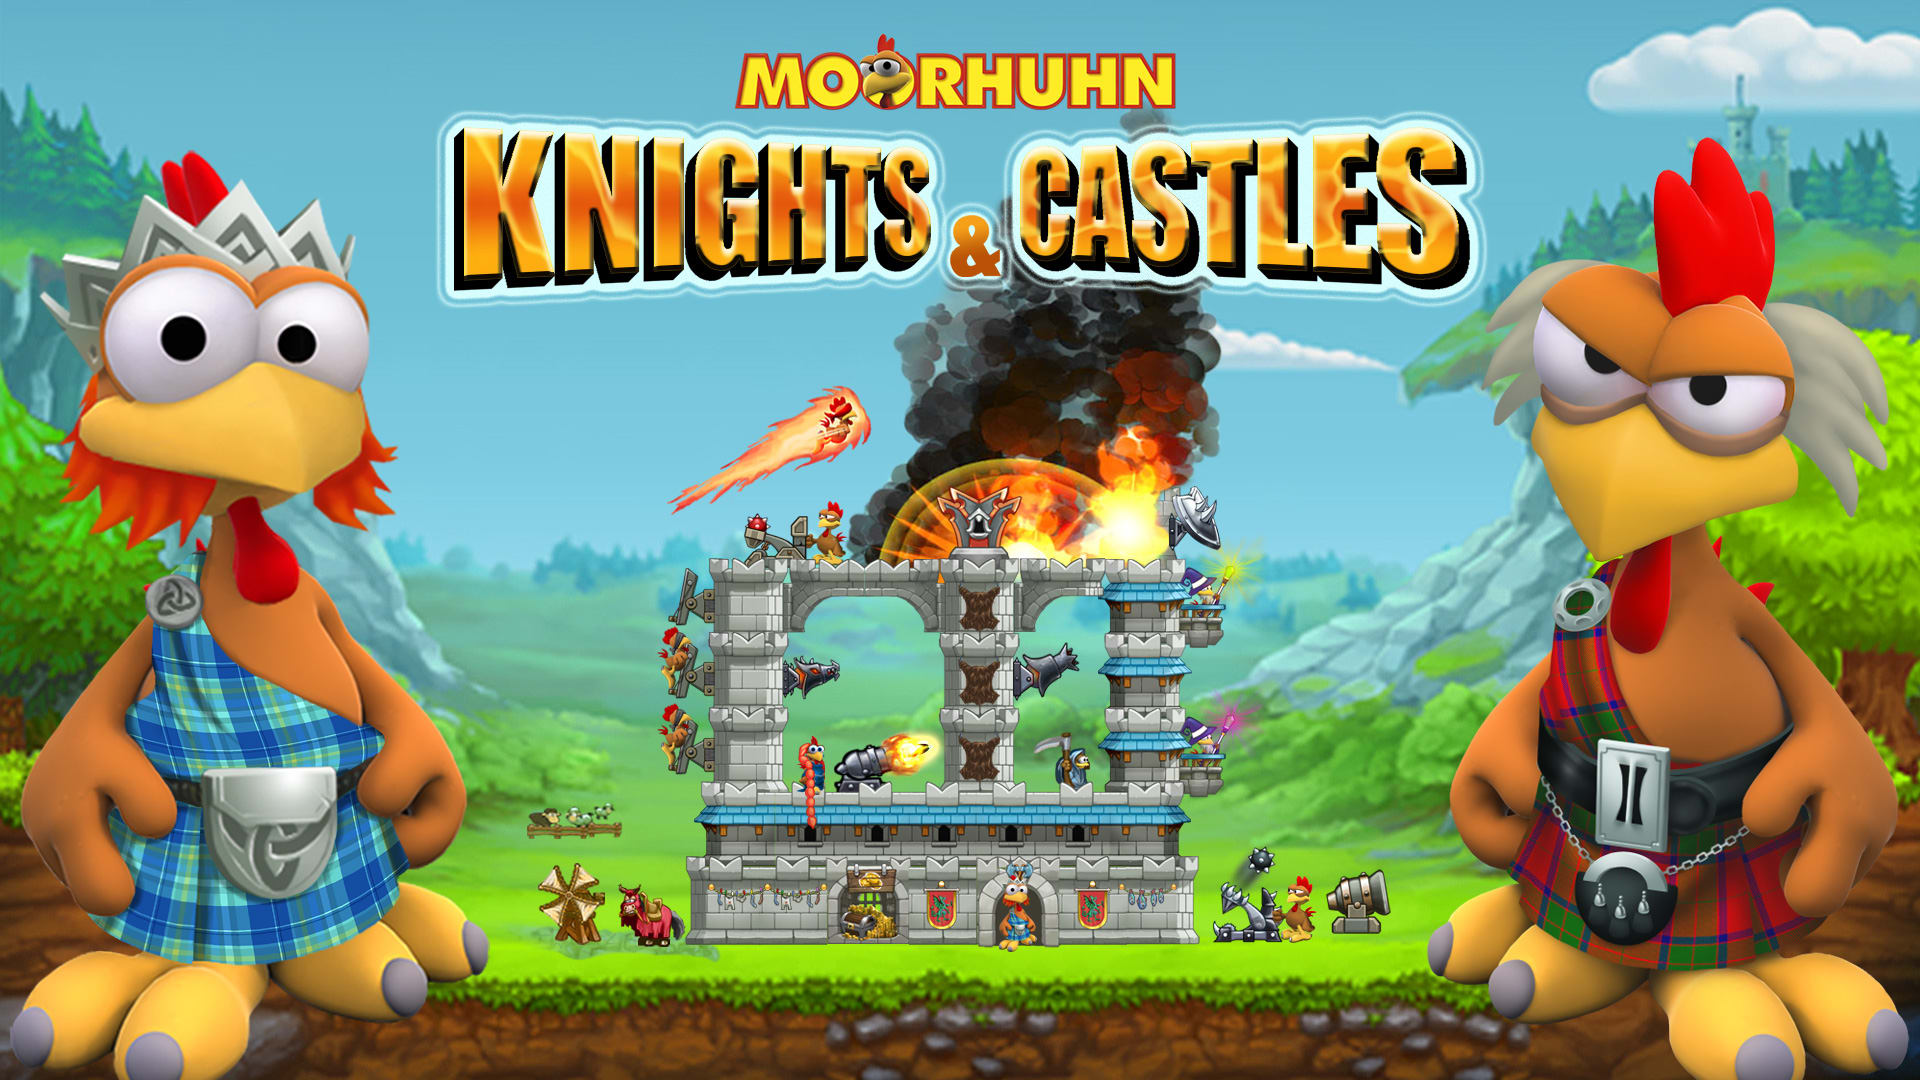 Moorhuhn Knights & Castles